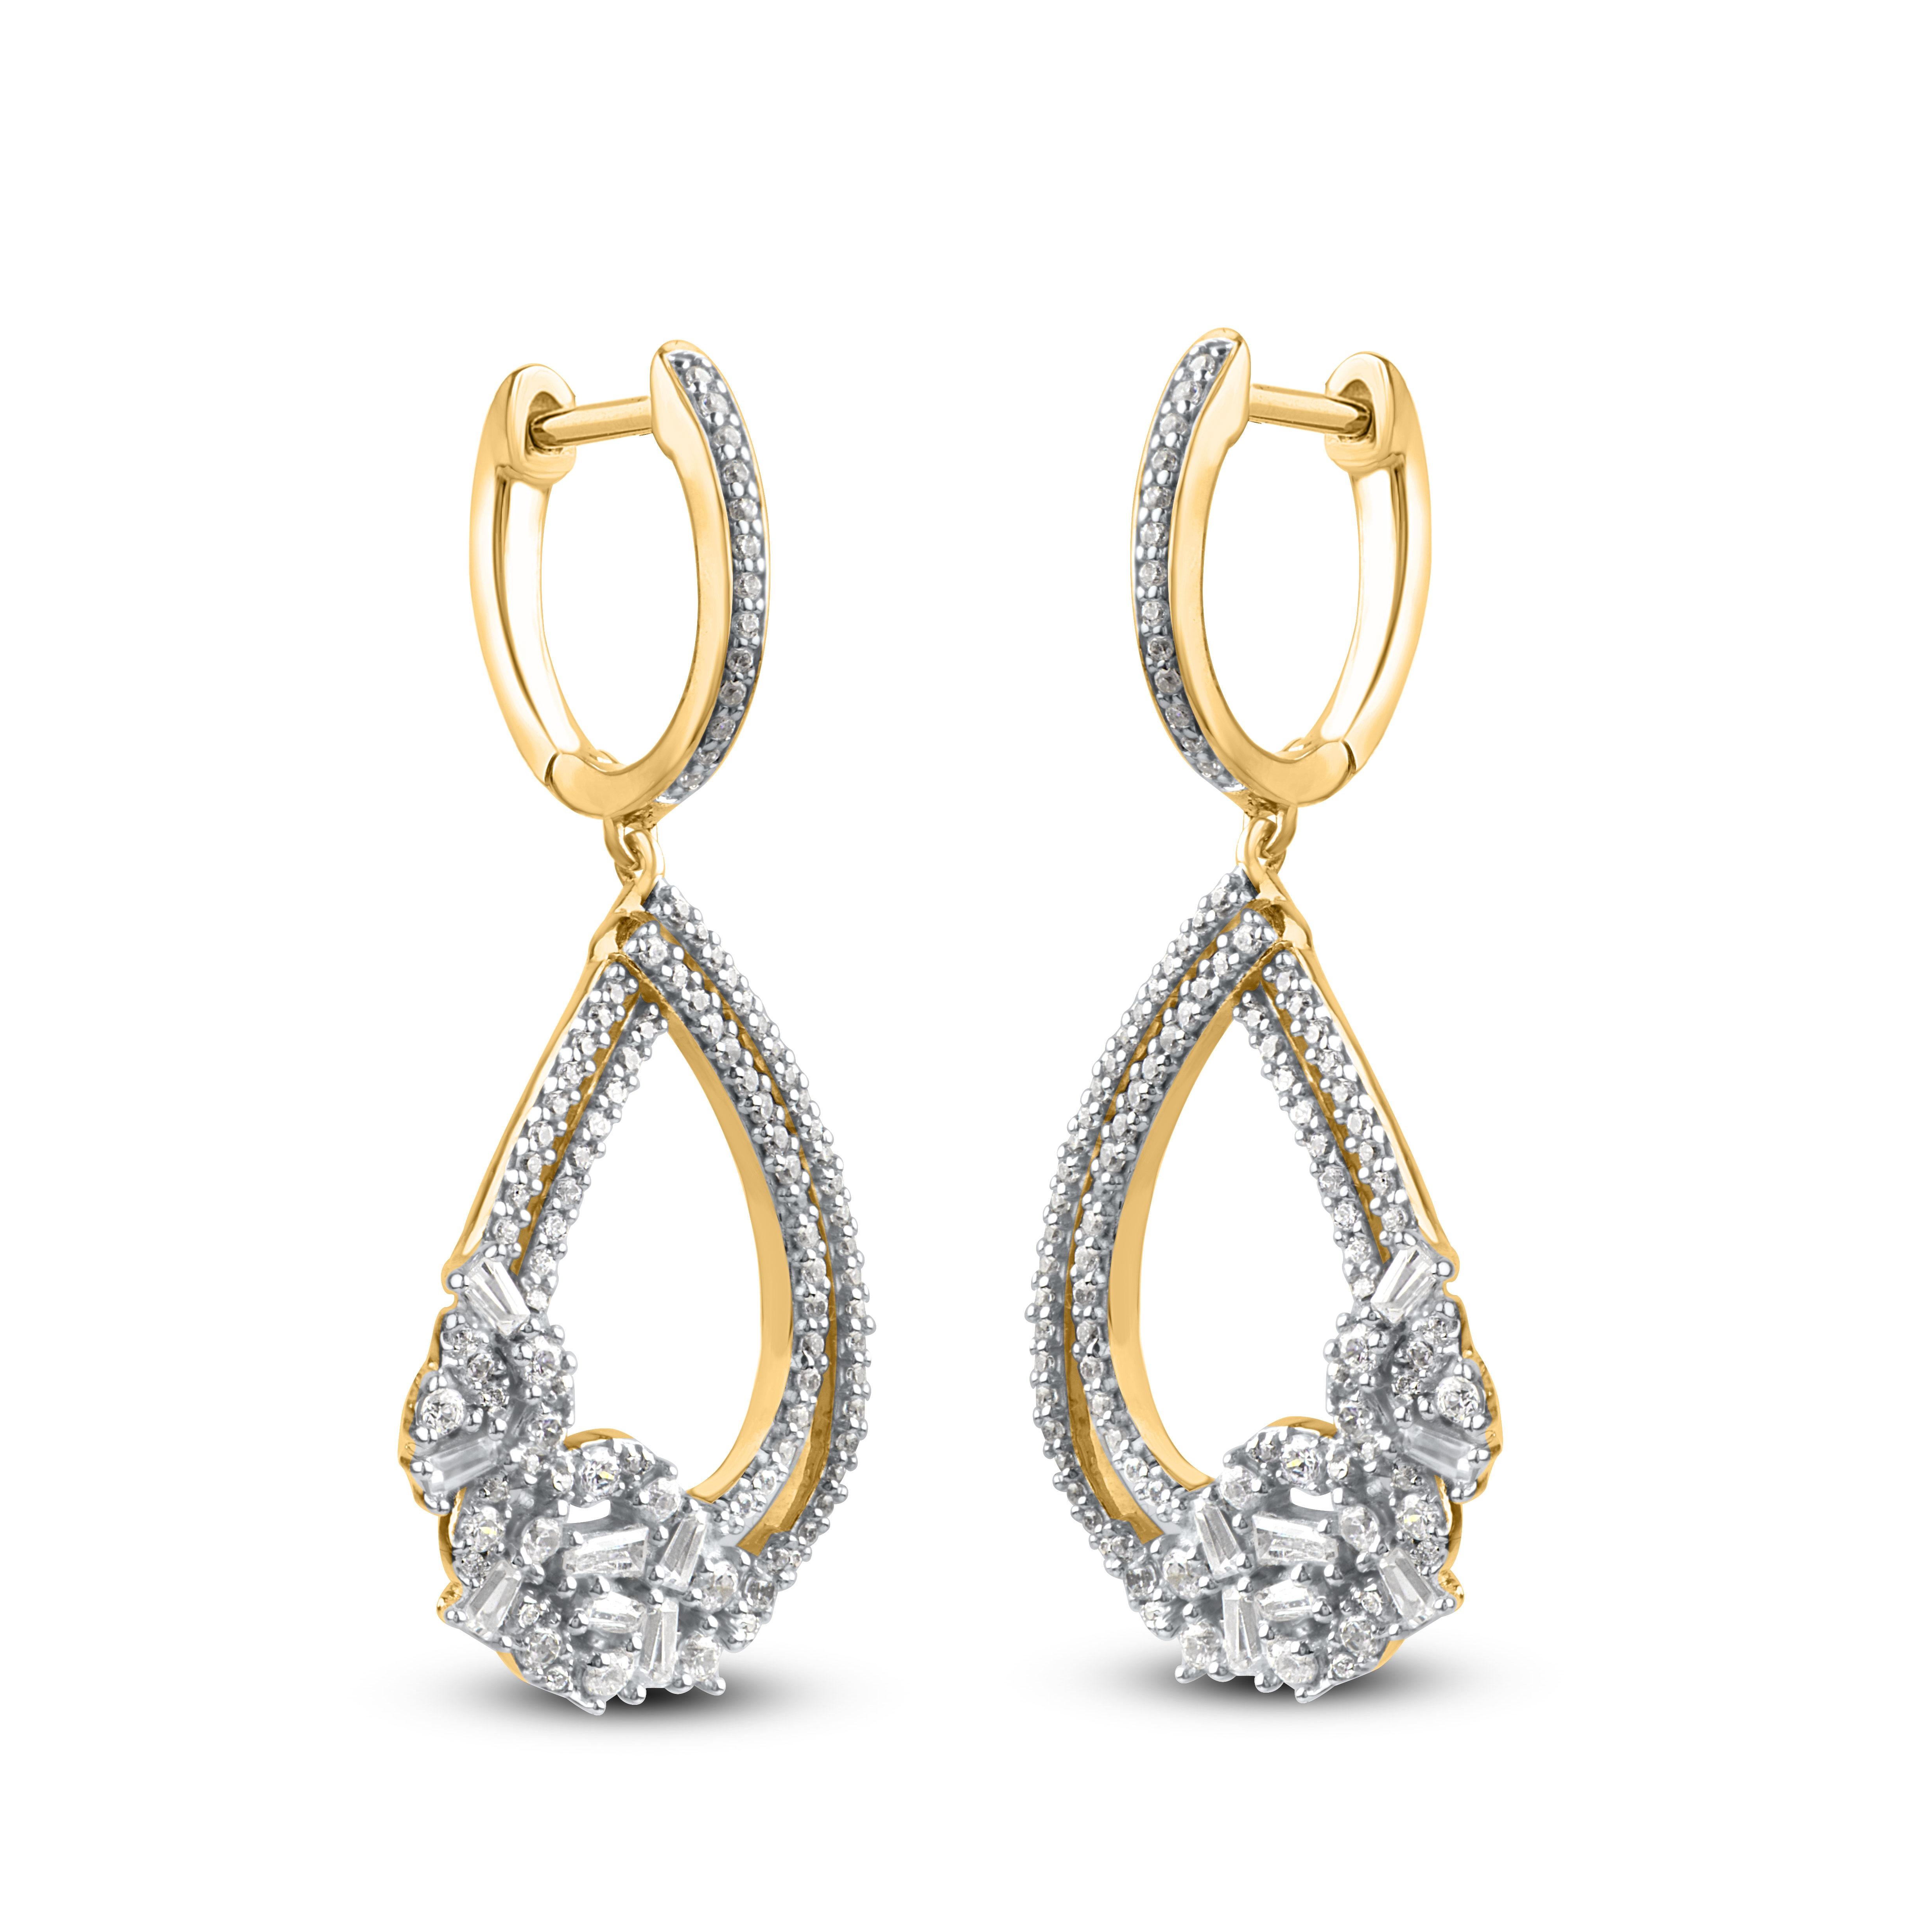 Diese eleganten und einzigartigen Diamant-Ohrringe eignen sich perfekt zum Verschenken. Hergestellt aus 14 Karat Roségold und akzentuiert mit 198 runden Brillanten und 14 Diamanten im Baguetteschliff in Zacken- und Pflasterfassung, die in der Farbe